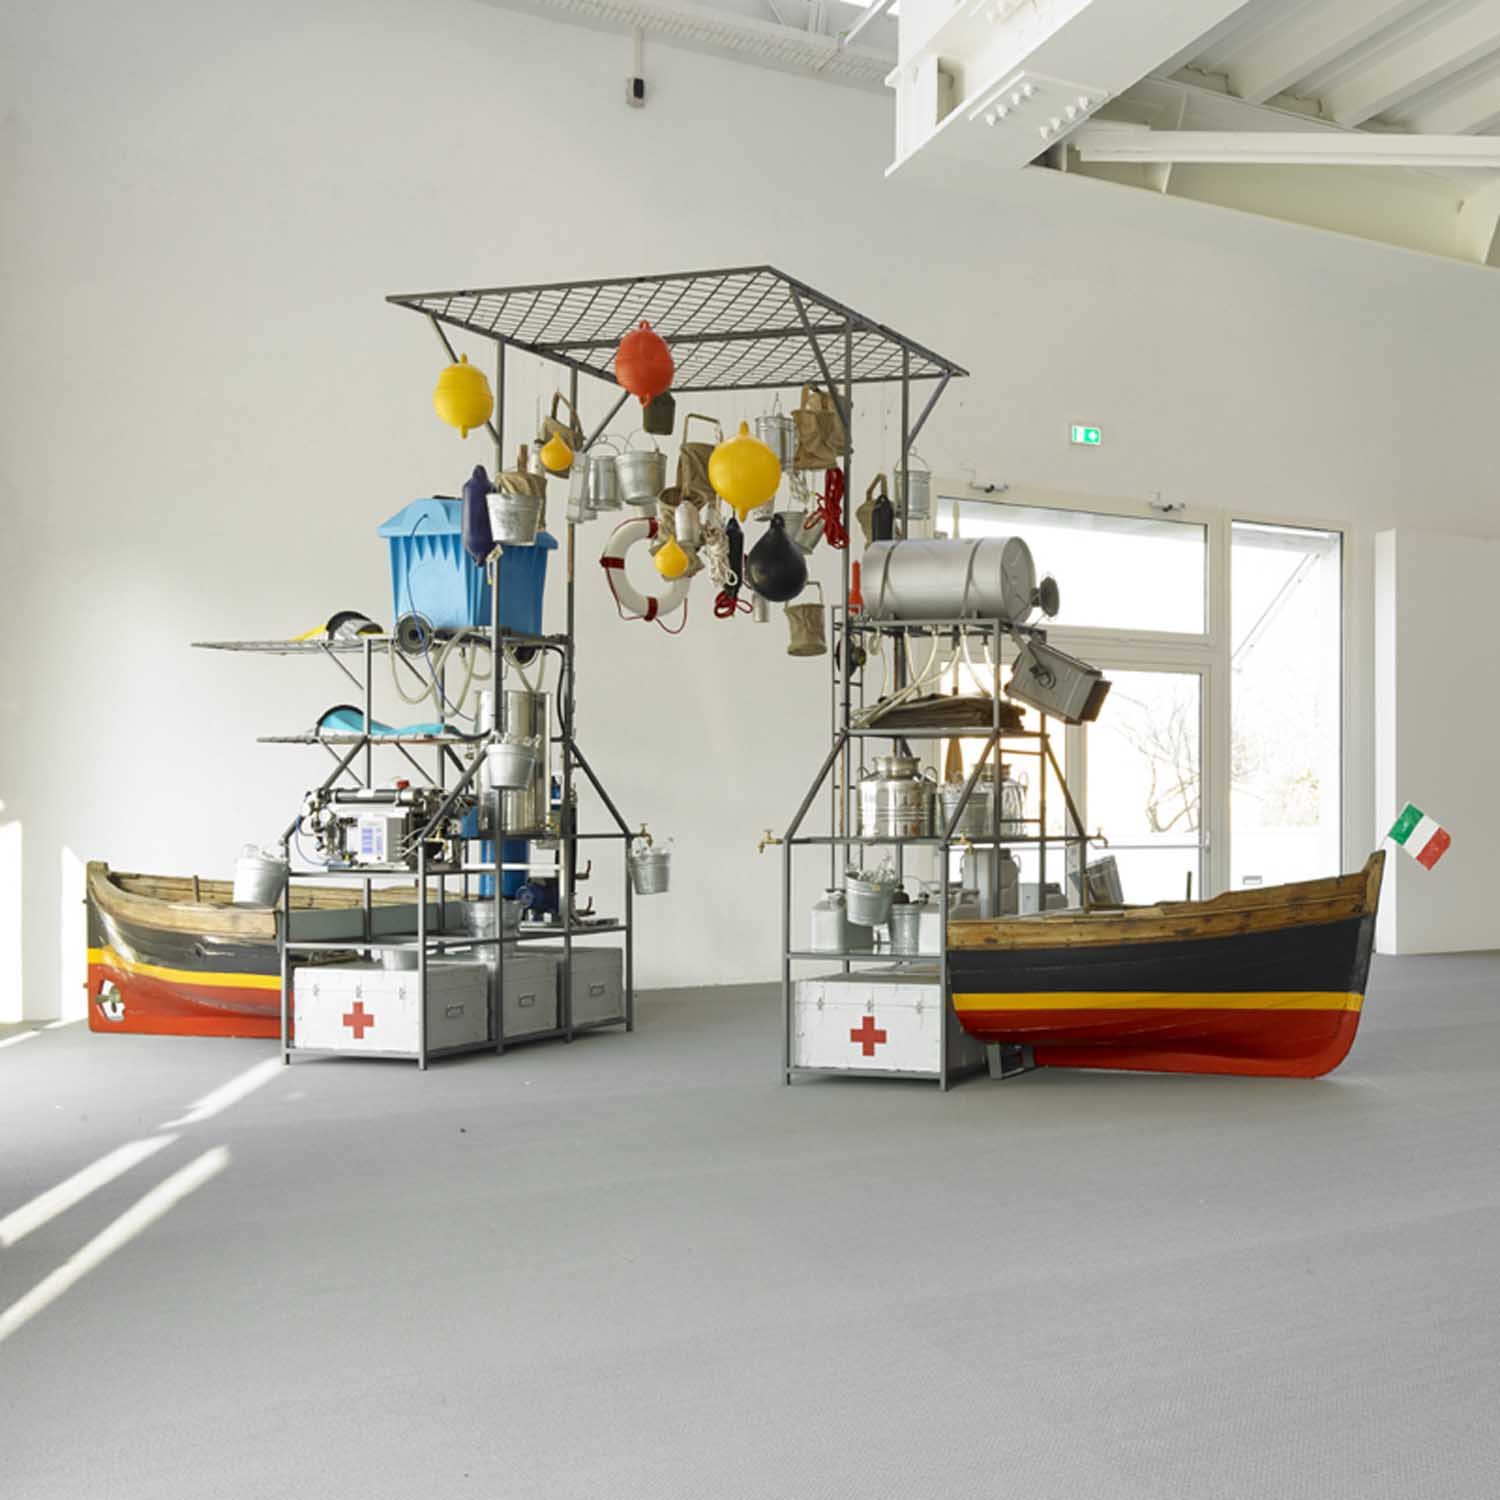 I preferiti di Marino | Lucy e Jorge Orta, Orta Water - Purification Station, 2005, 804x295x168 cm, Collezione Golinelli, Bologna